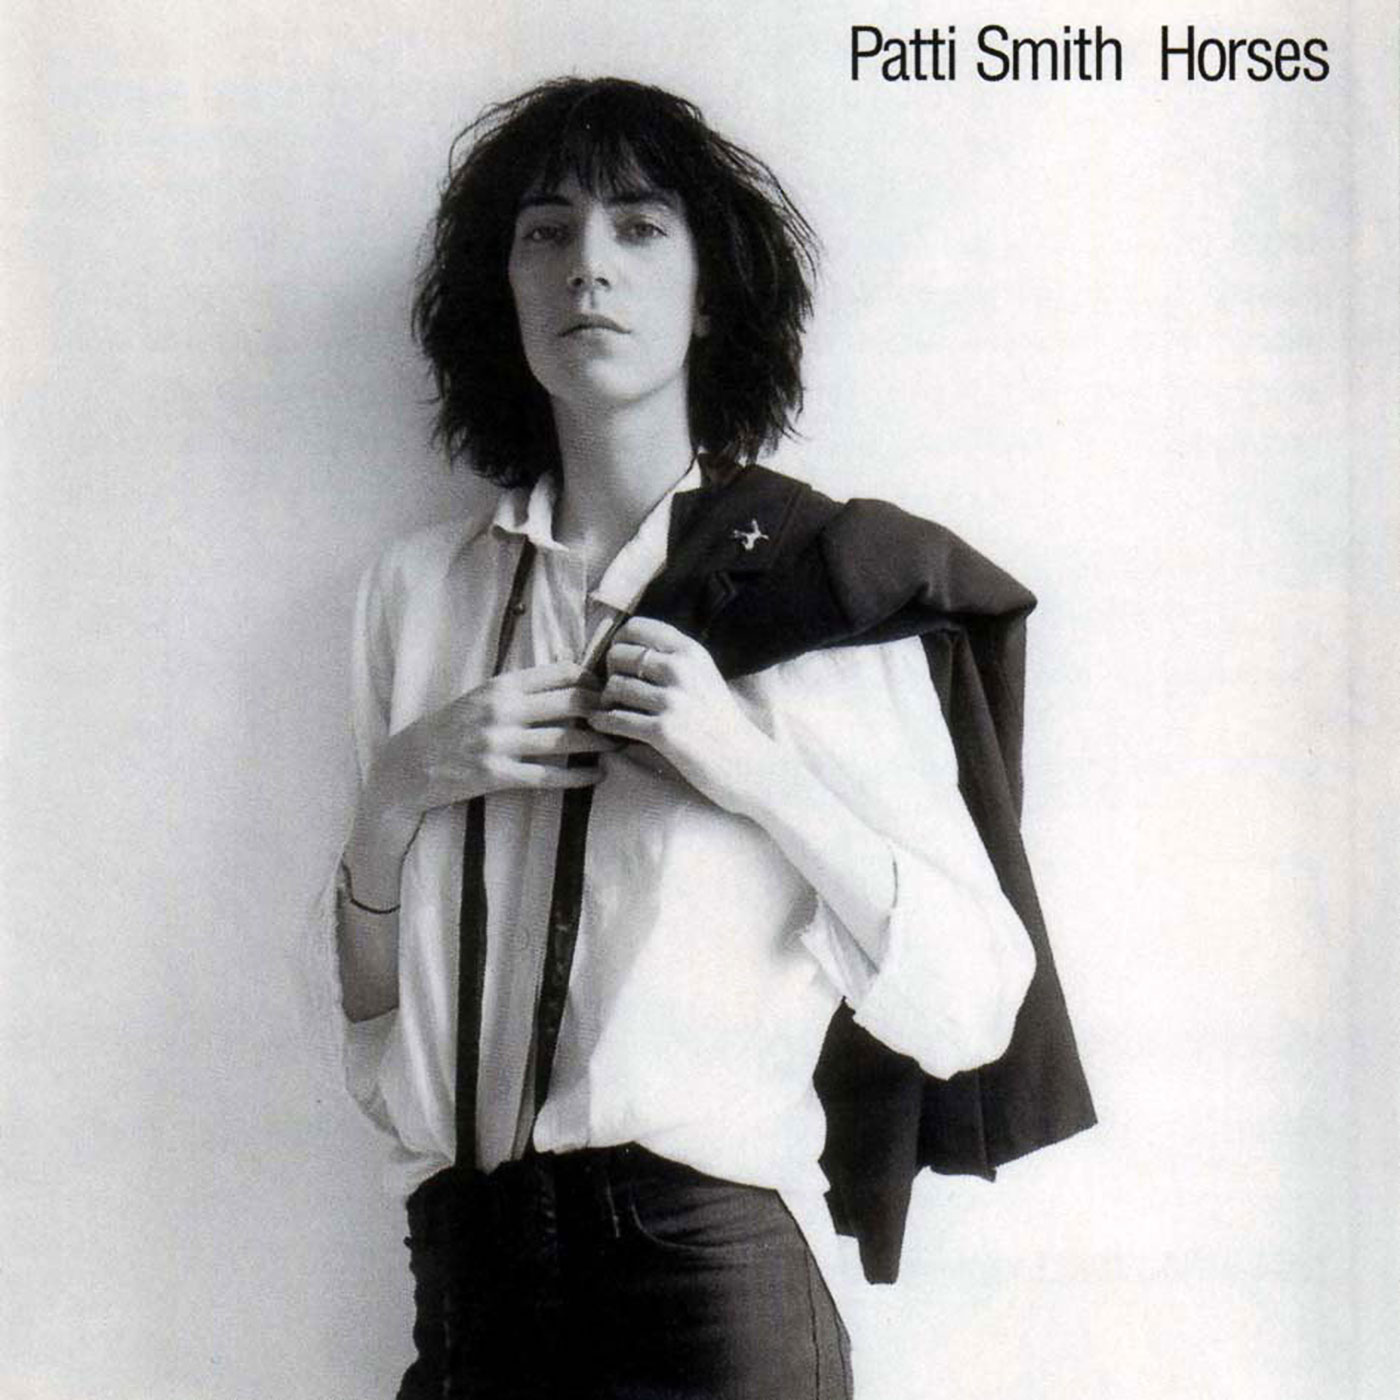 343 Patti Smith – Horses